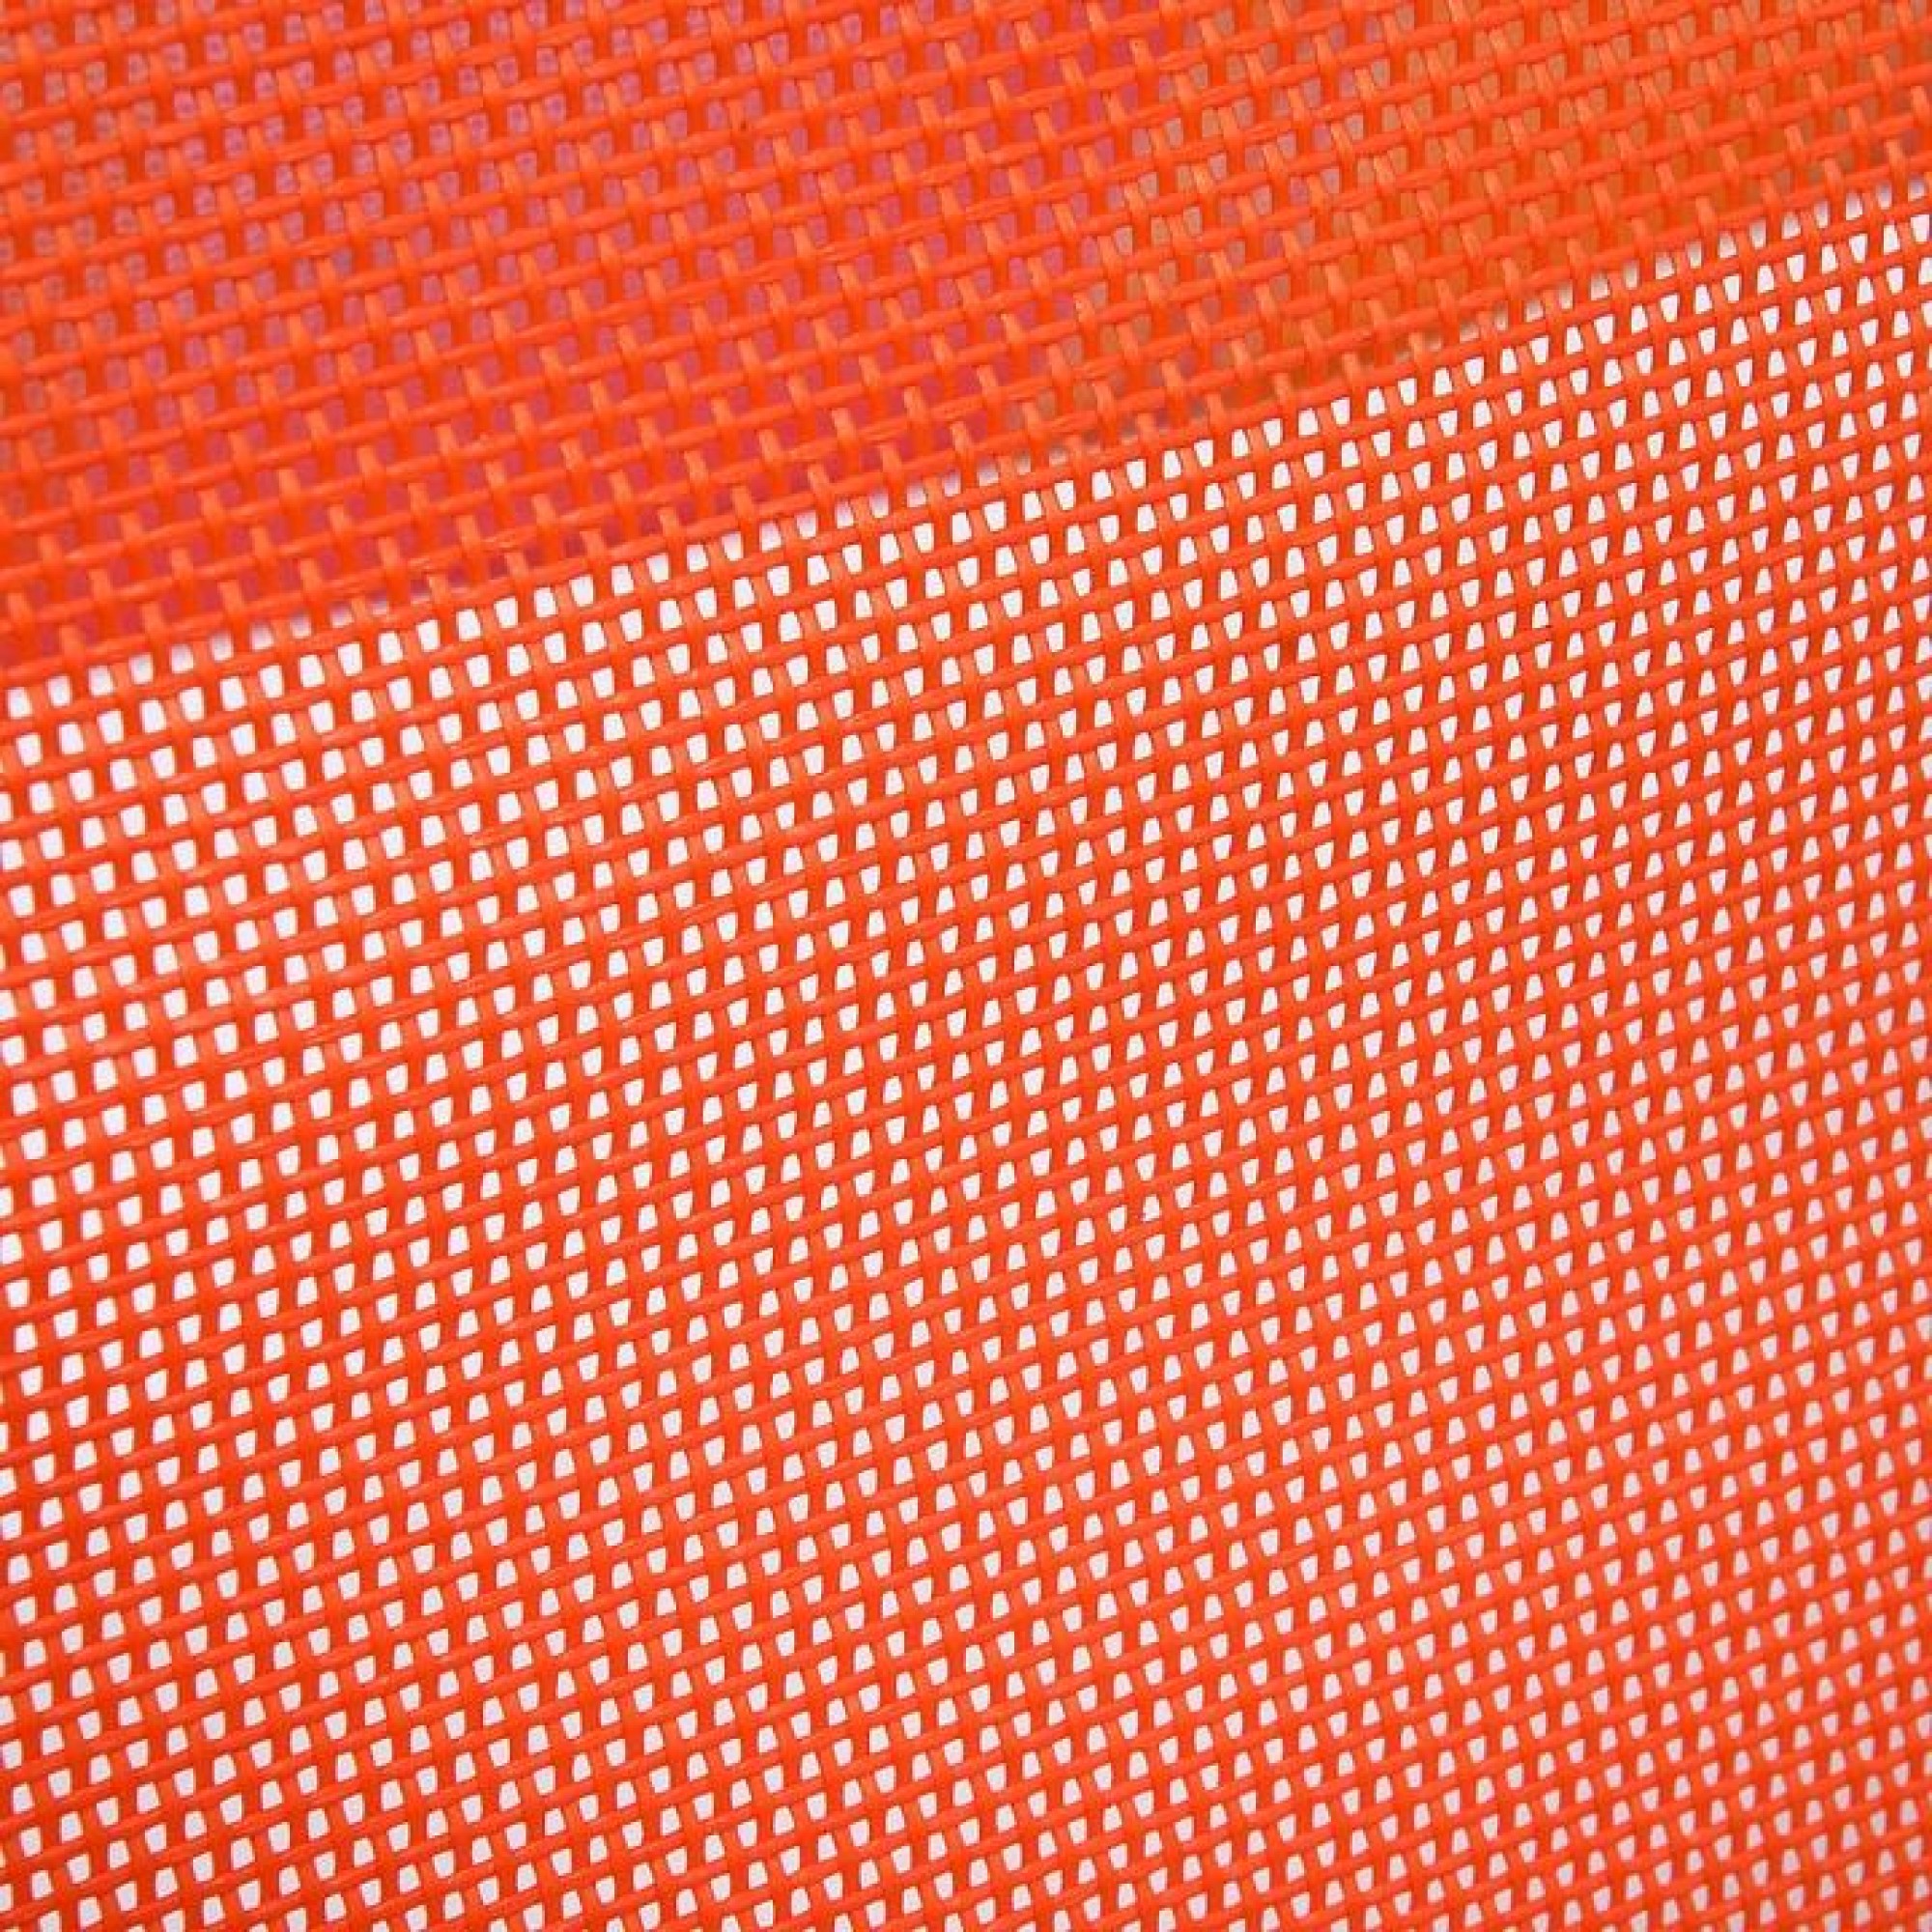 Кресло складное Orange оранжевый 790x620x750(BSC_61181)